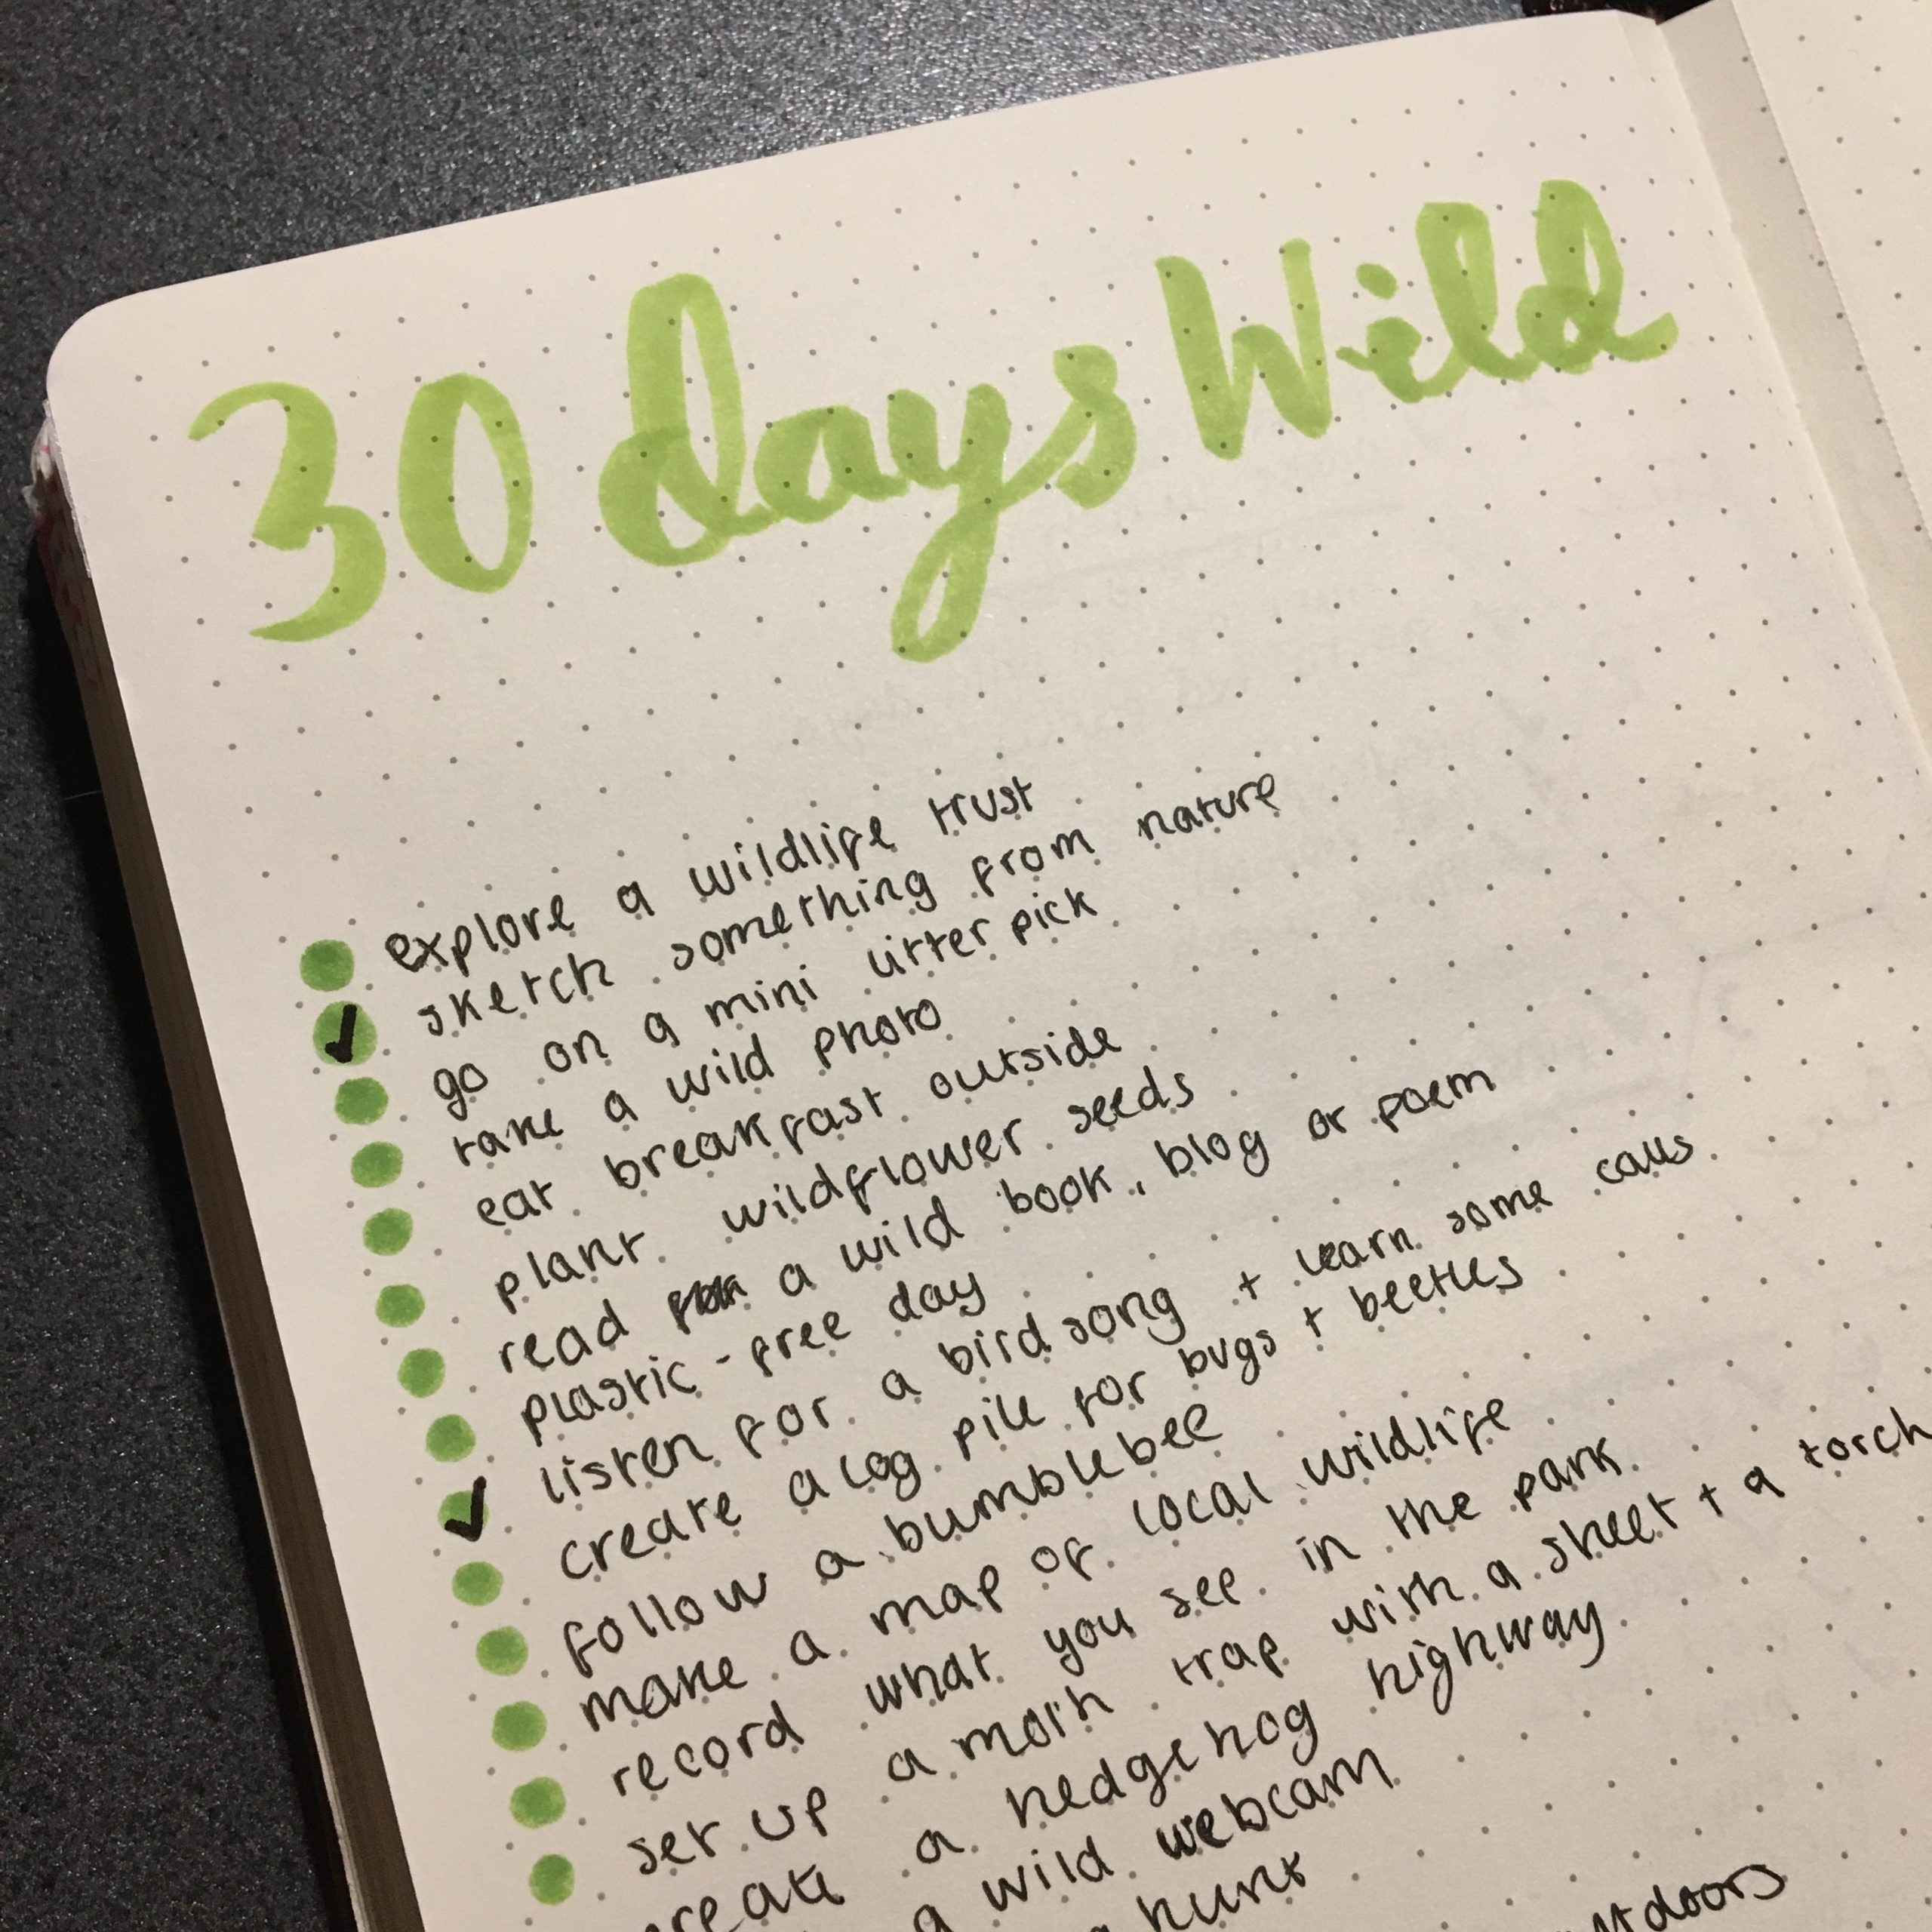 30 days wild challenge 